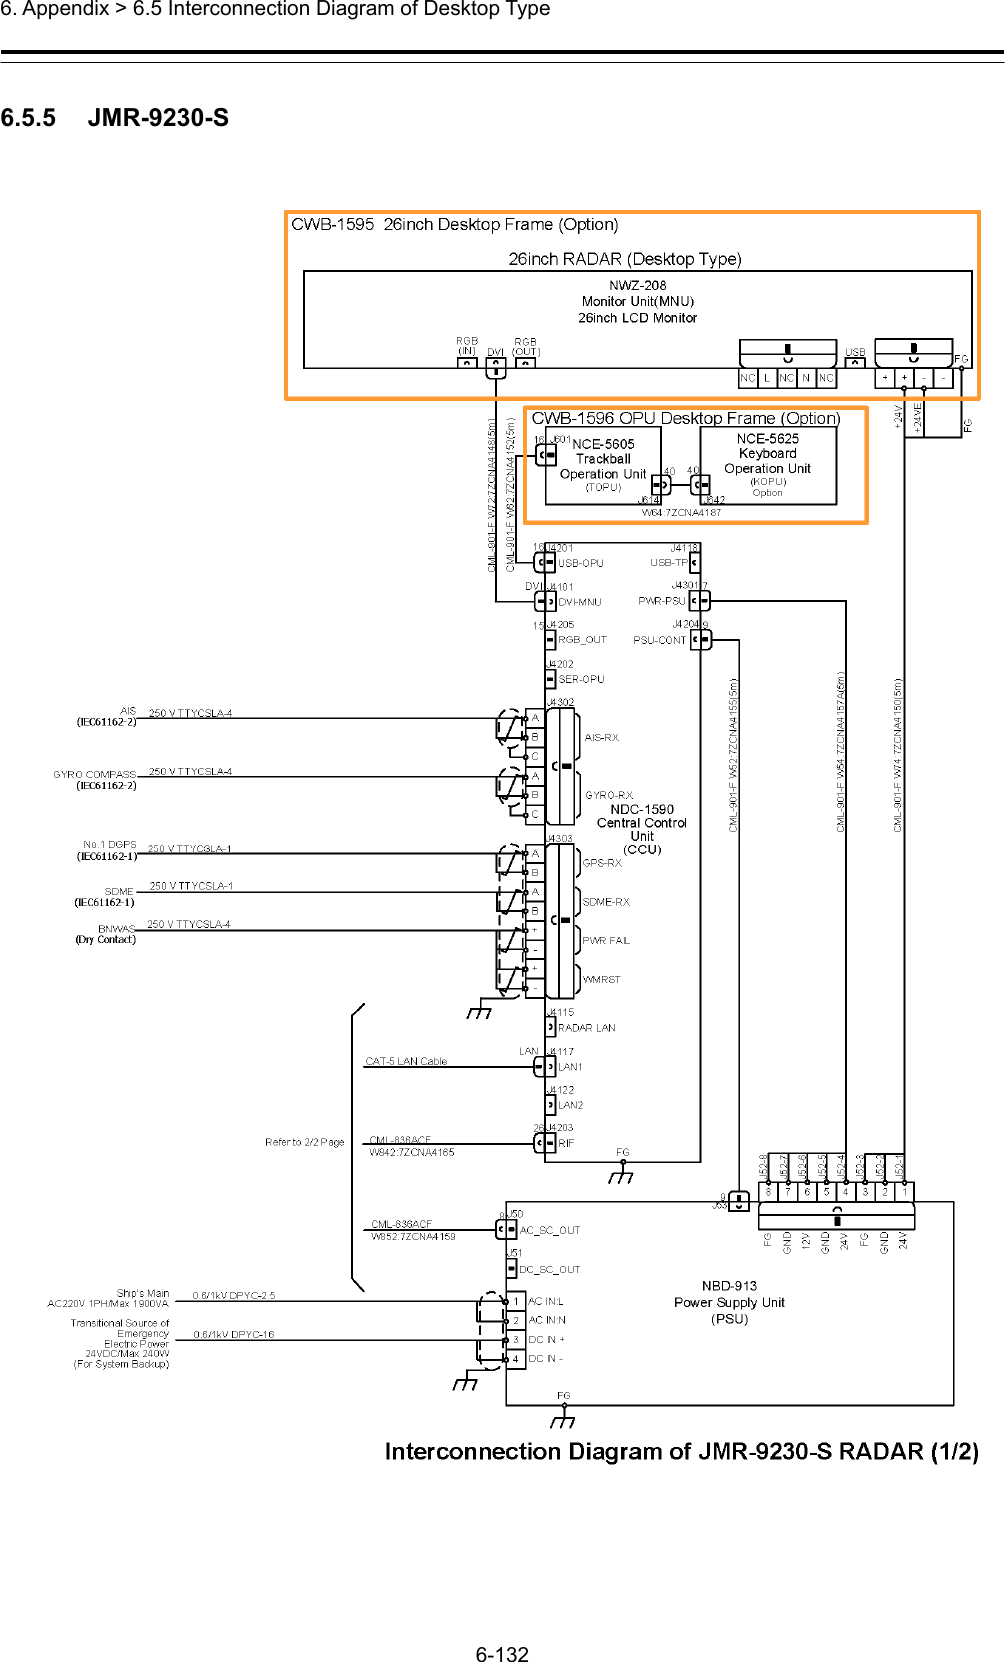  6. Appendix &gt; 6.5 Interconnection Diagram of Desktop Type 6-132  6.5.5   JMR-9230-S  